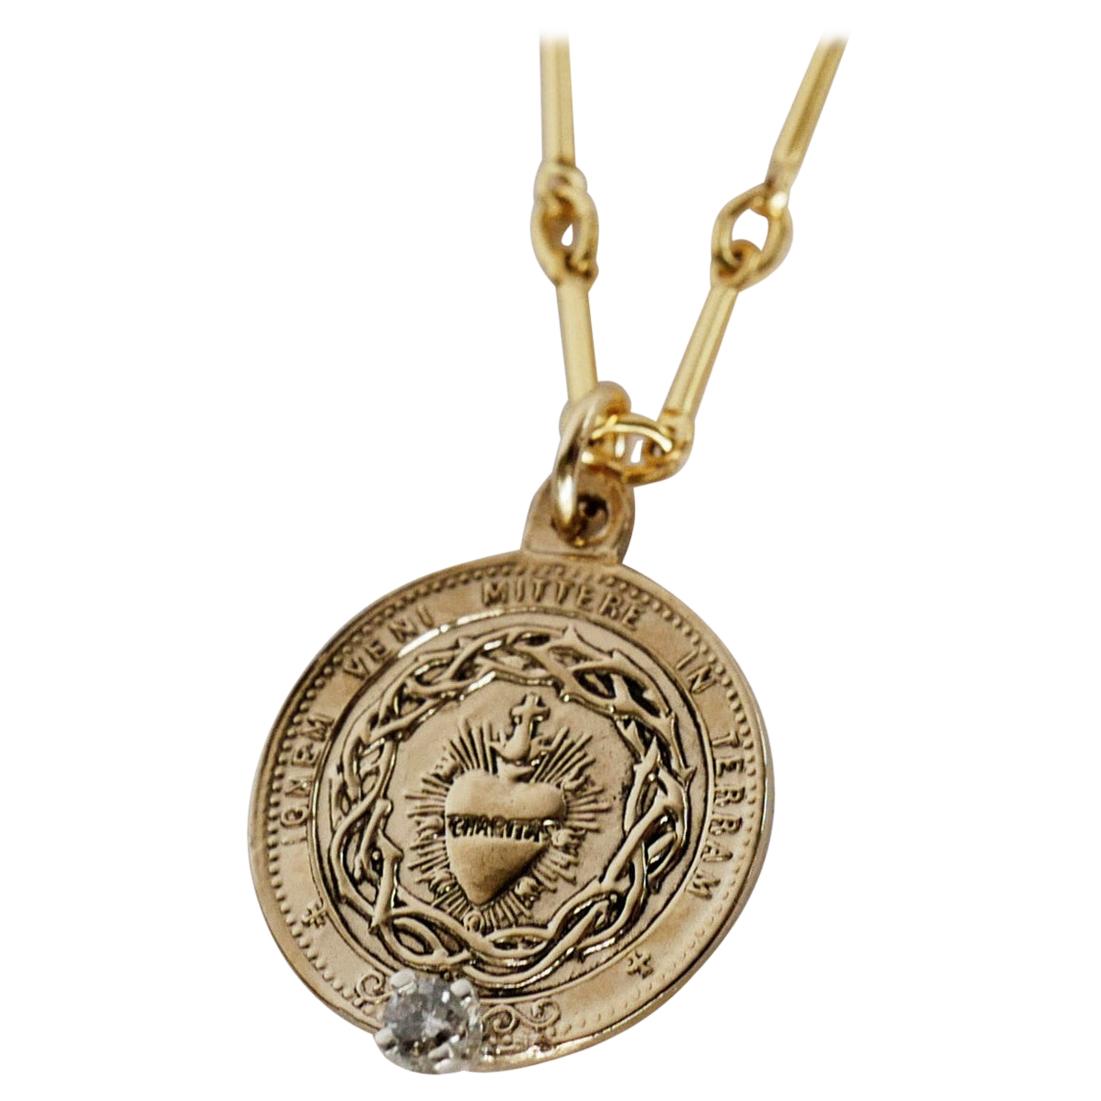 Weißer Diamant Heiliges Herz Münze Medaille Anhänger Kette Halskette

Das Heiligste Herz (auch bekannt als das Heiligste Herz Jesu) hat eine der tiefsten Bedeutungen in der römisch-katholischen Praxis. Das Symbol steht für das eigentliche Herz Jesu